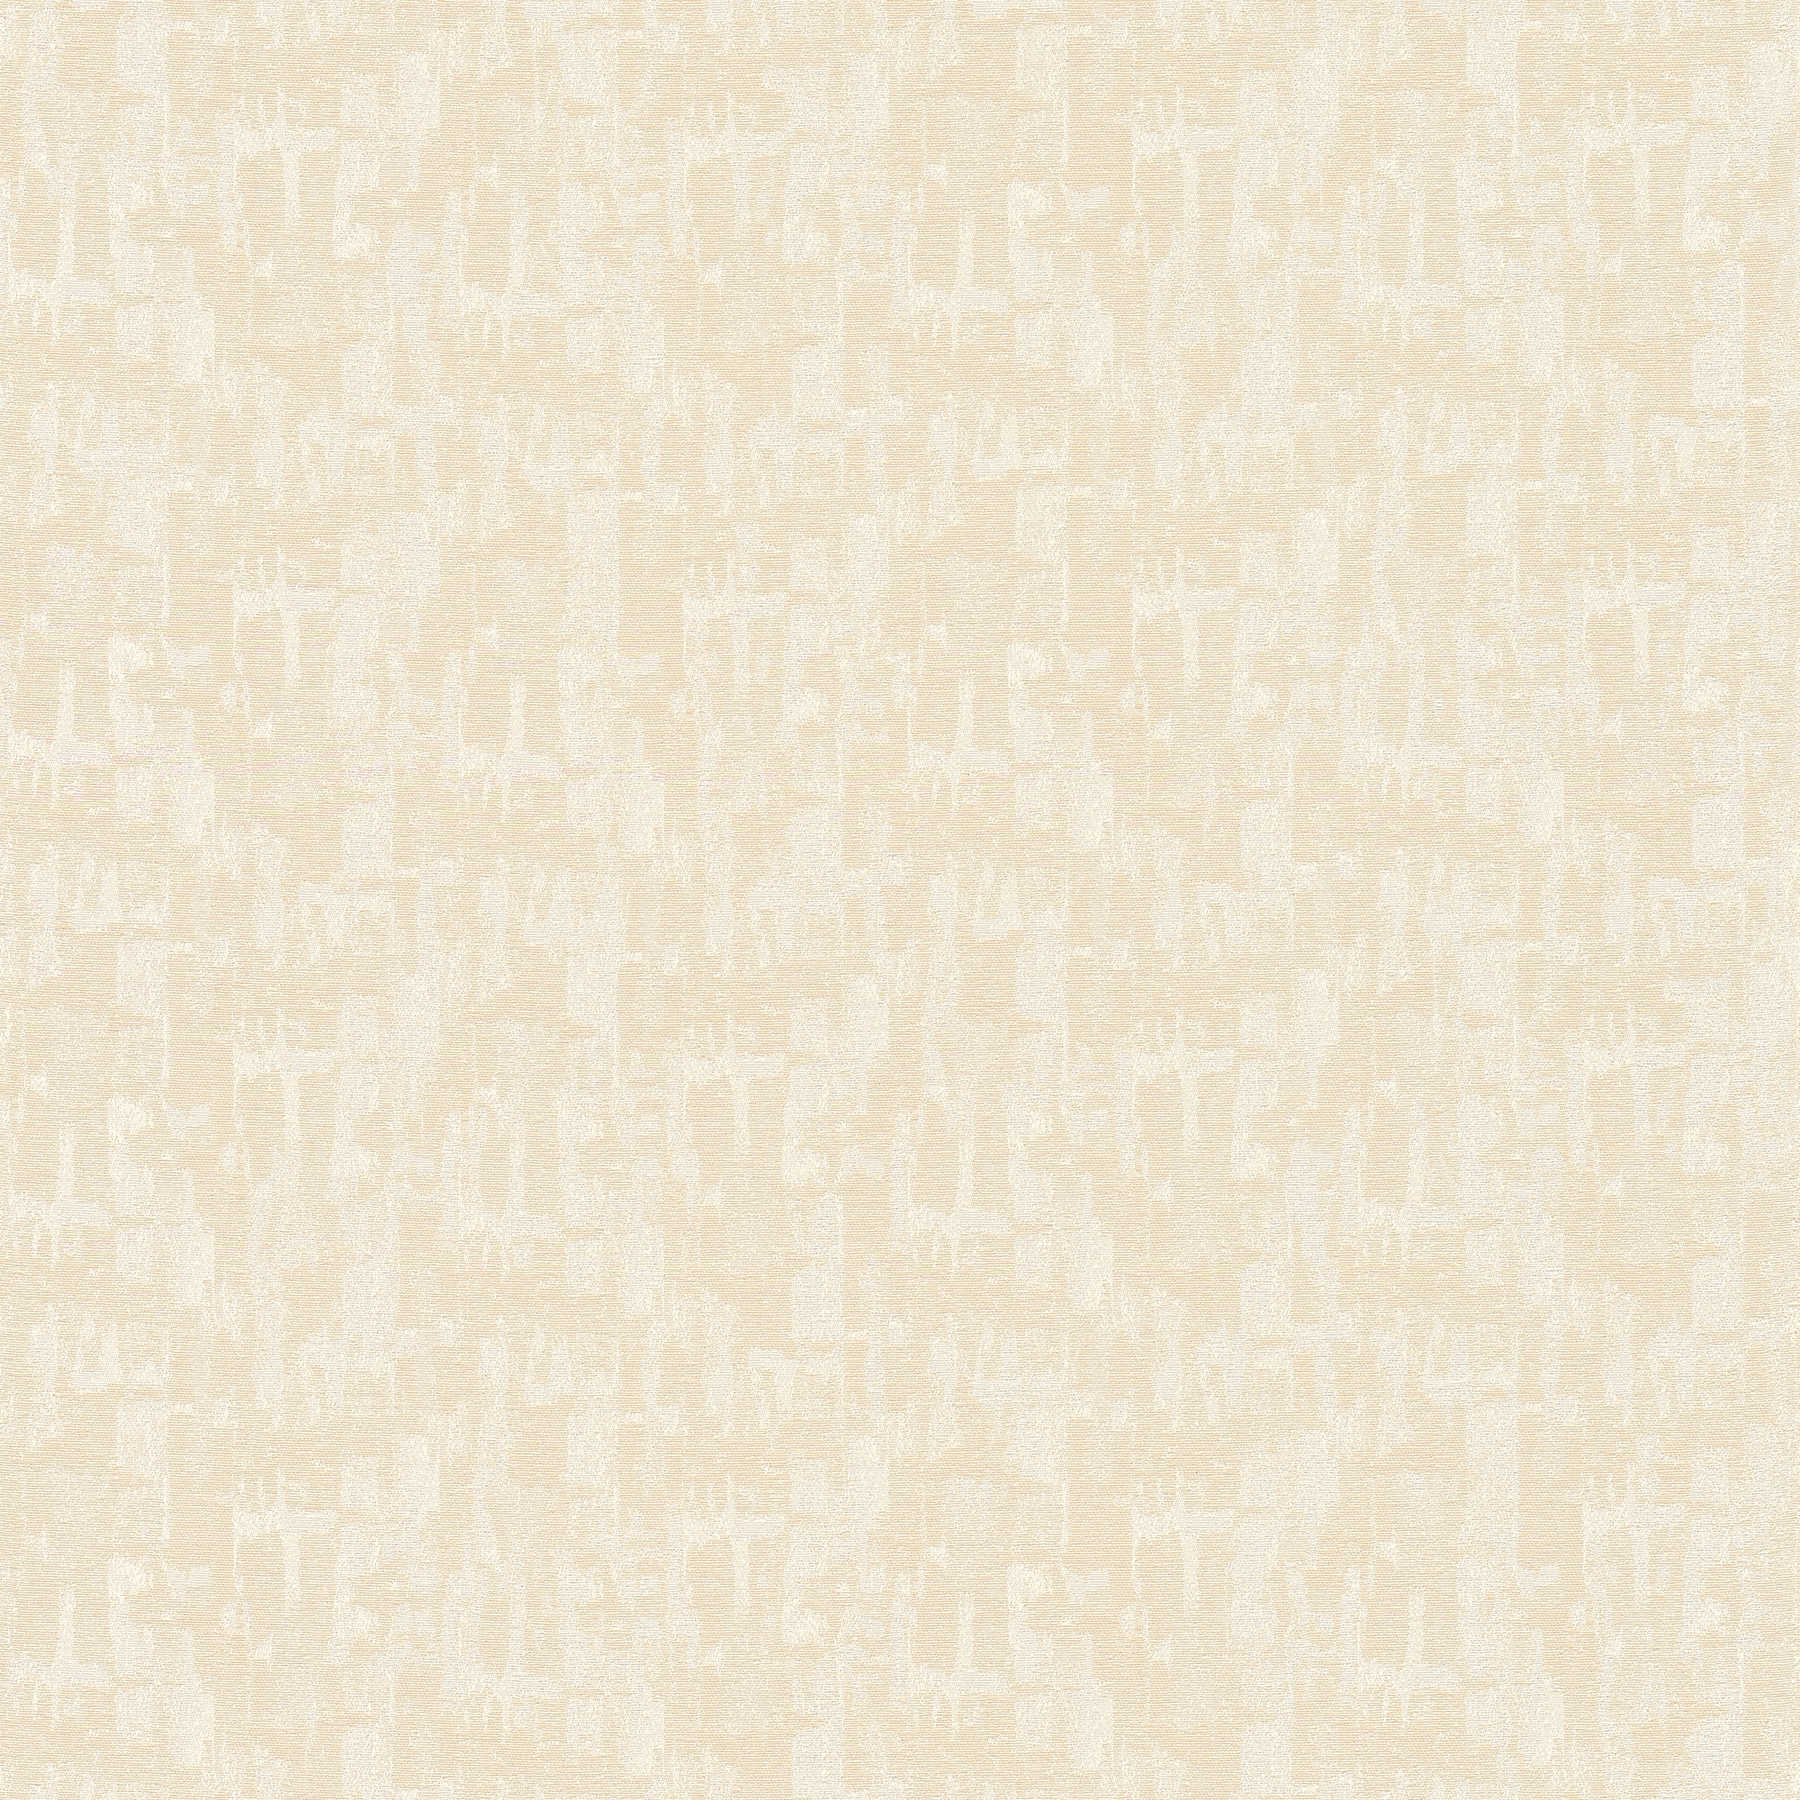 Retro behang met abstract crème-beige patroon
